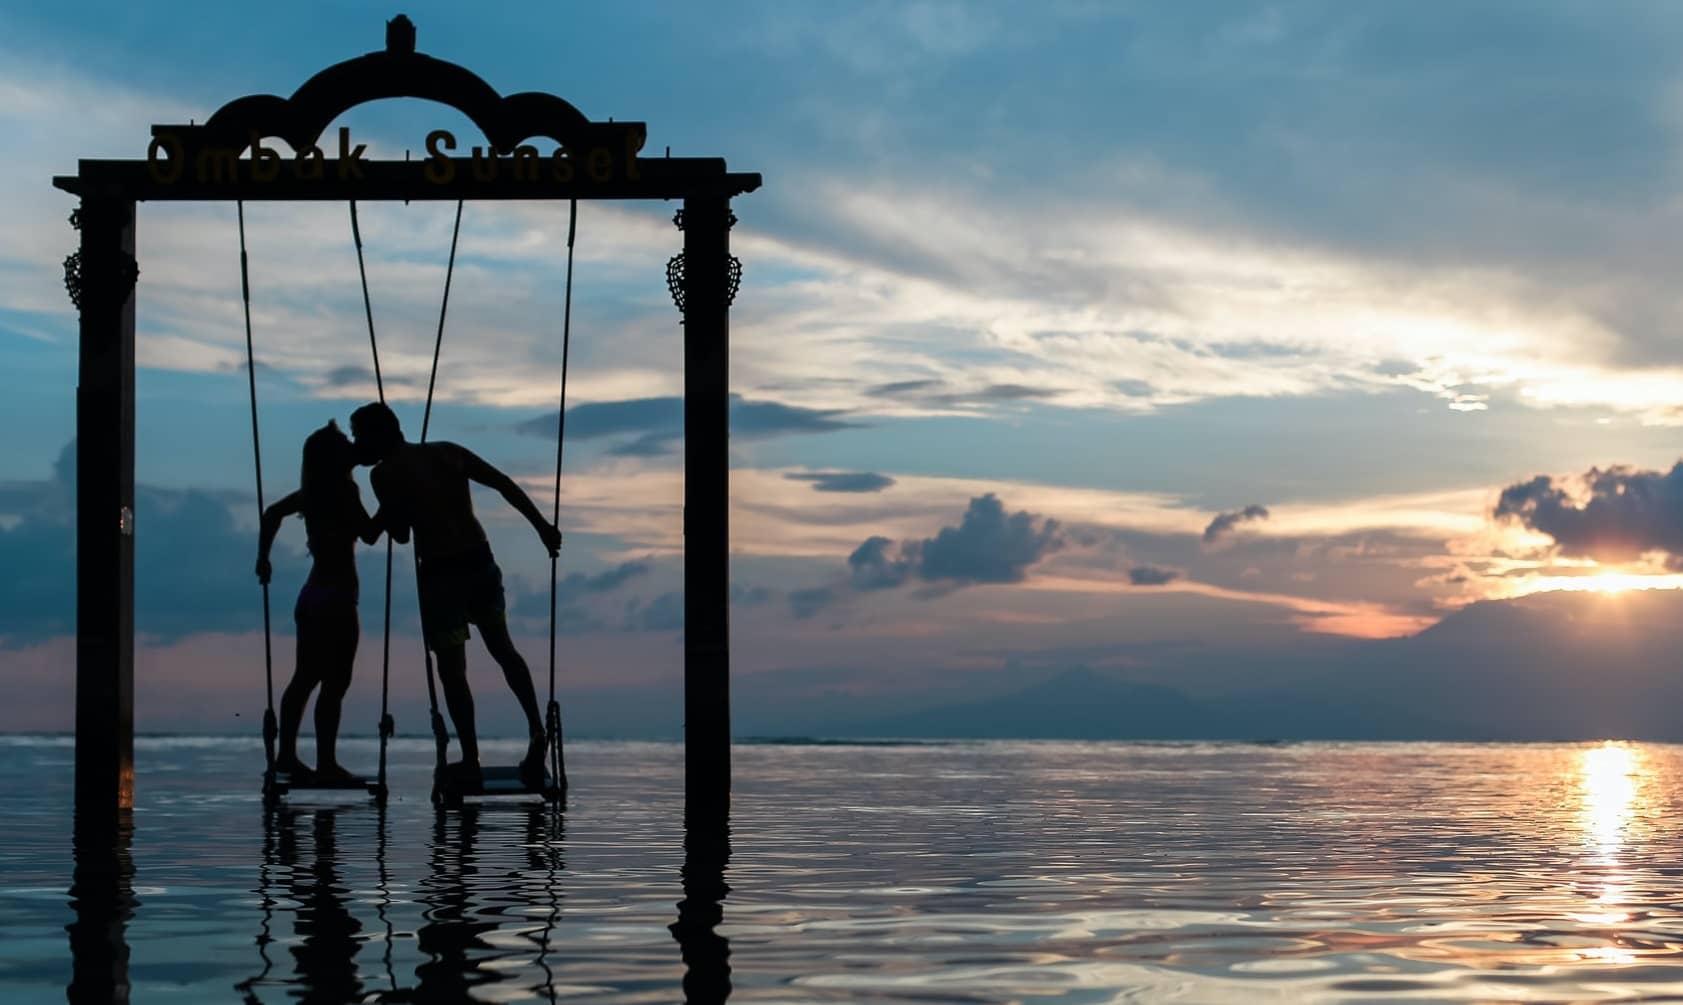 Fantasie, zwei Liebende unter einem Hochzeitsbogen direkt im Meer bei einem romantischen Sonnenuntergang